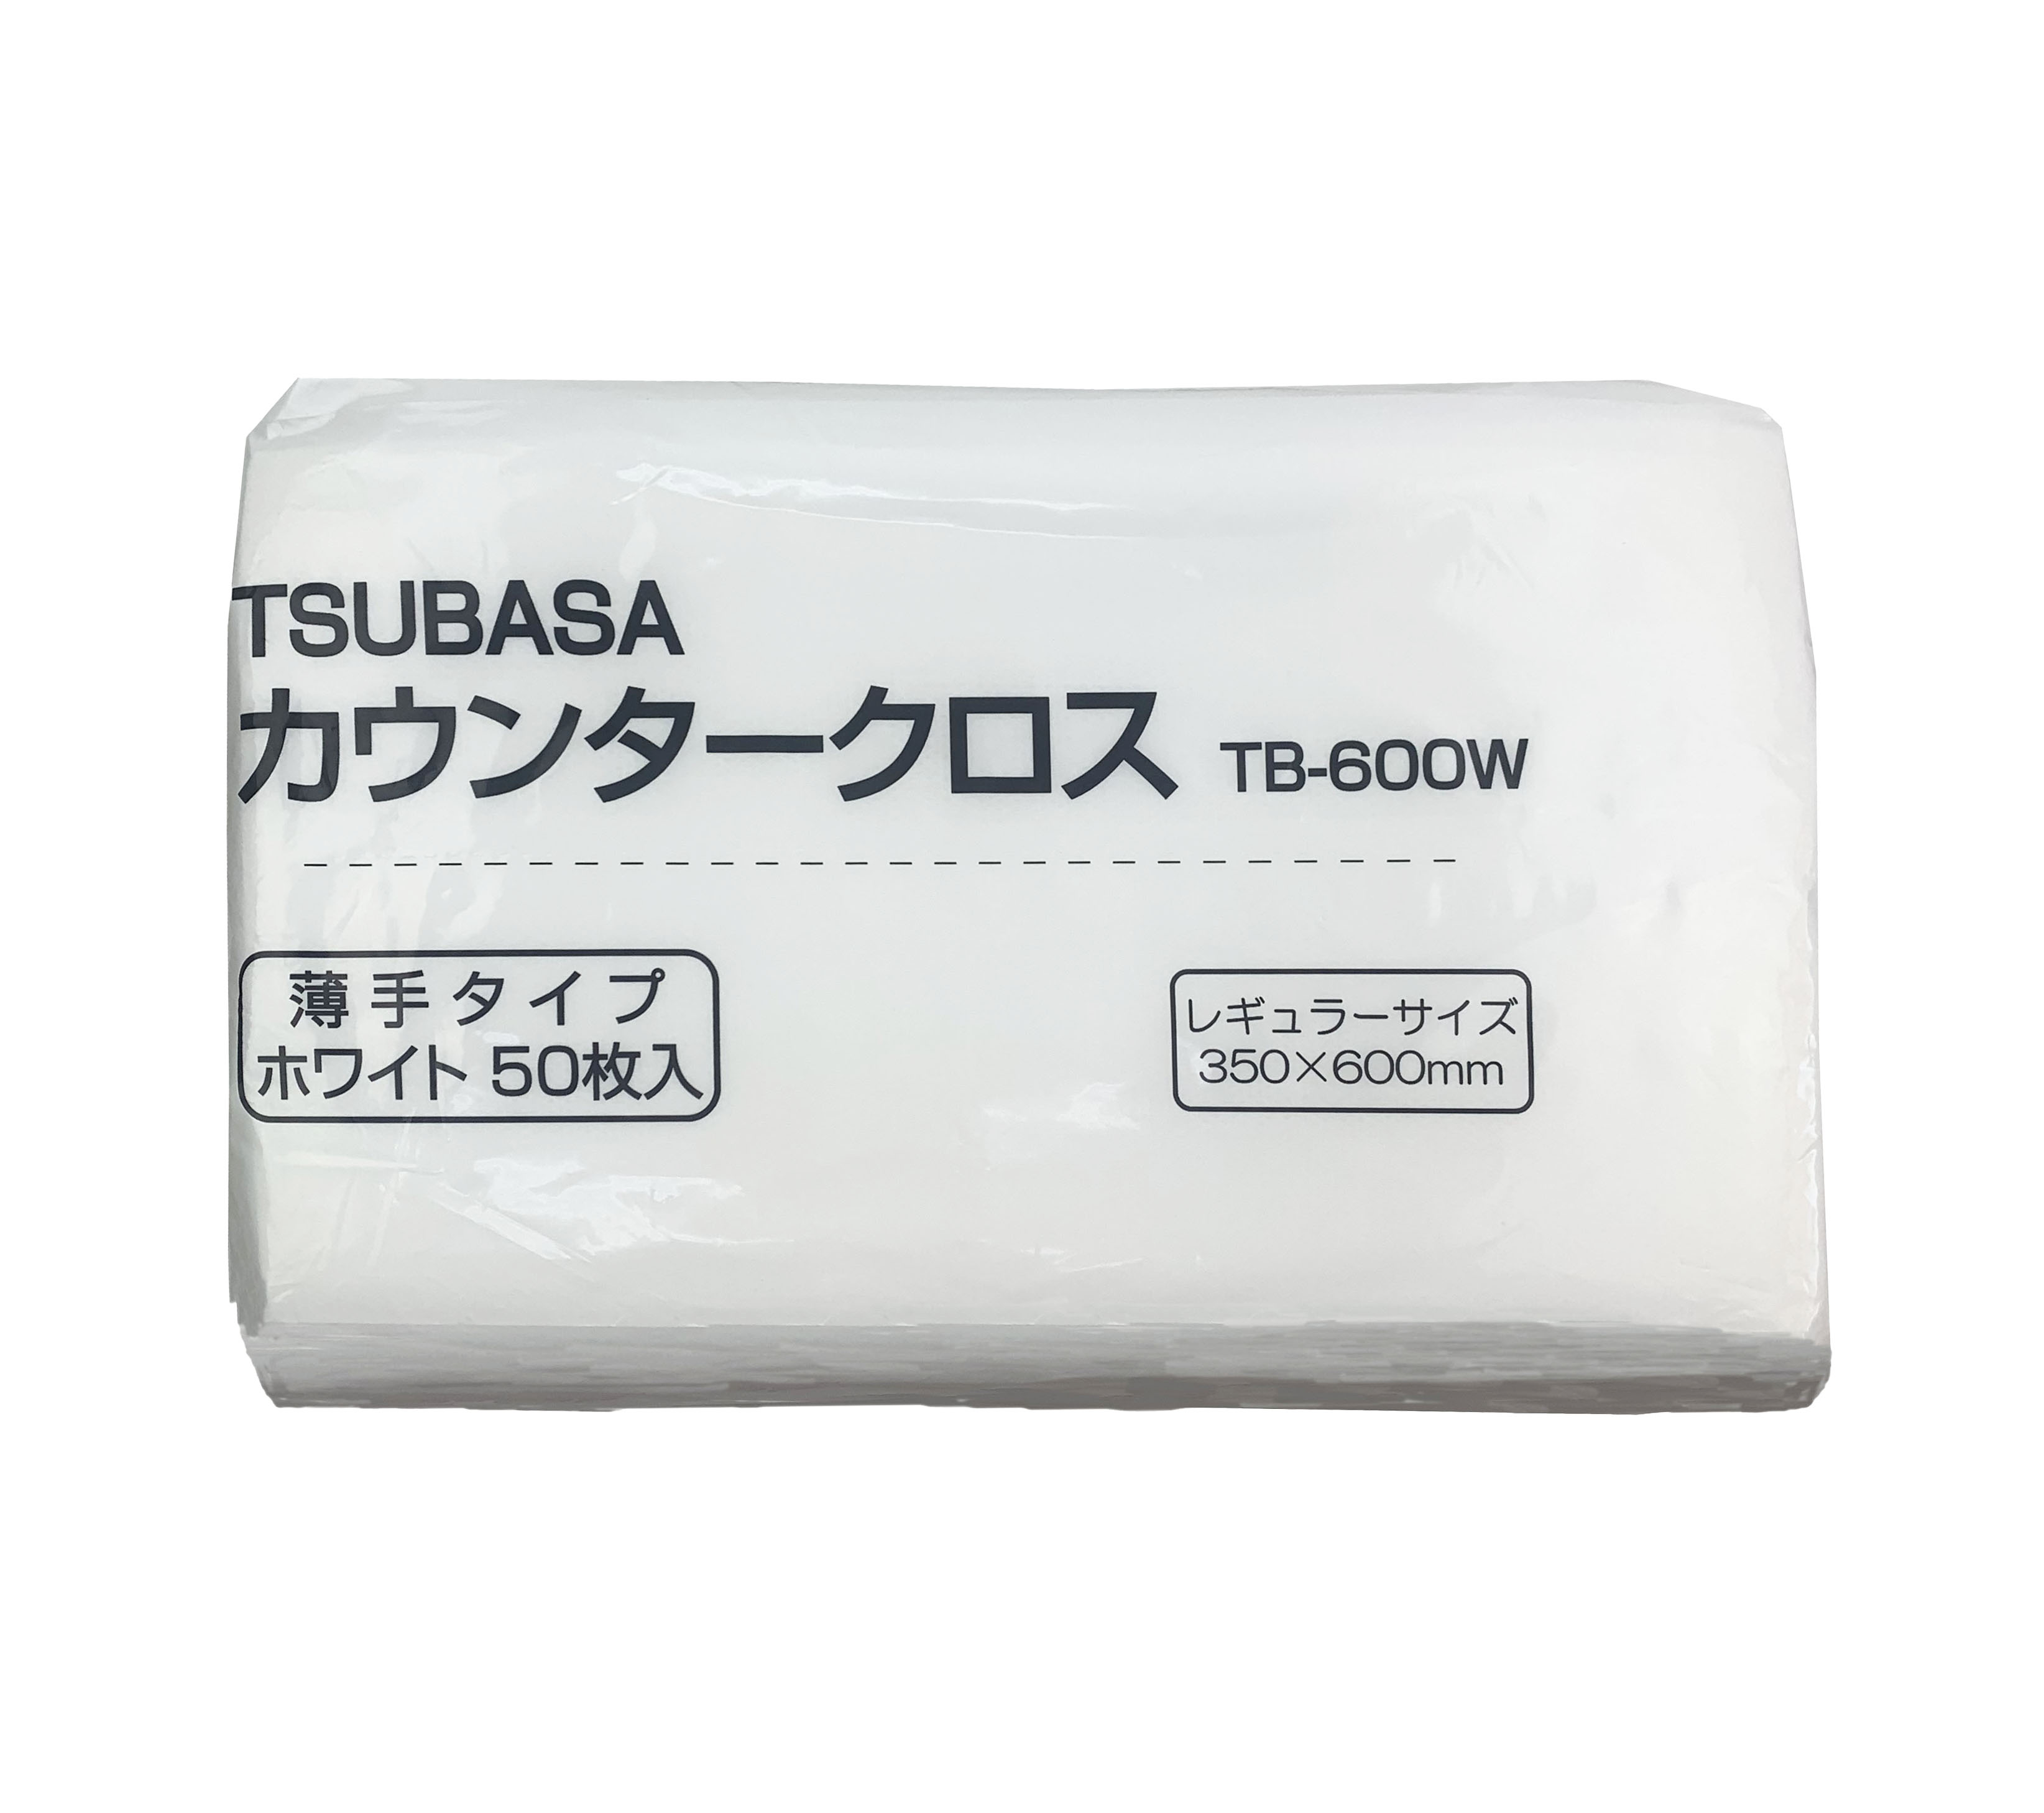 ※新商品※【つばさ】TSUBASA カウンタークロス(ダスター) 薄手タイプ (60cm×35cm) 50枚入り ホワイト